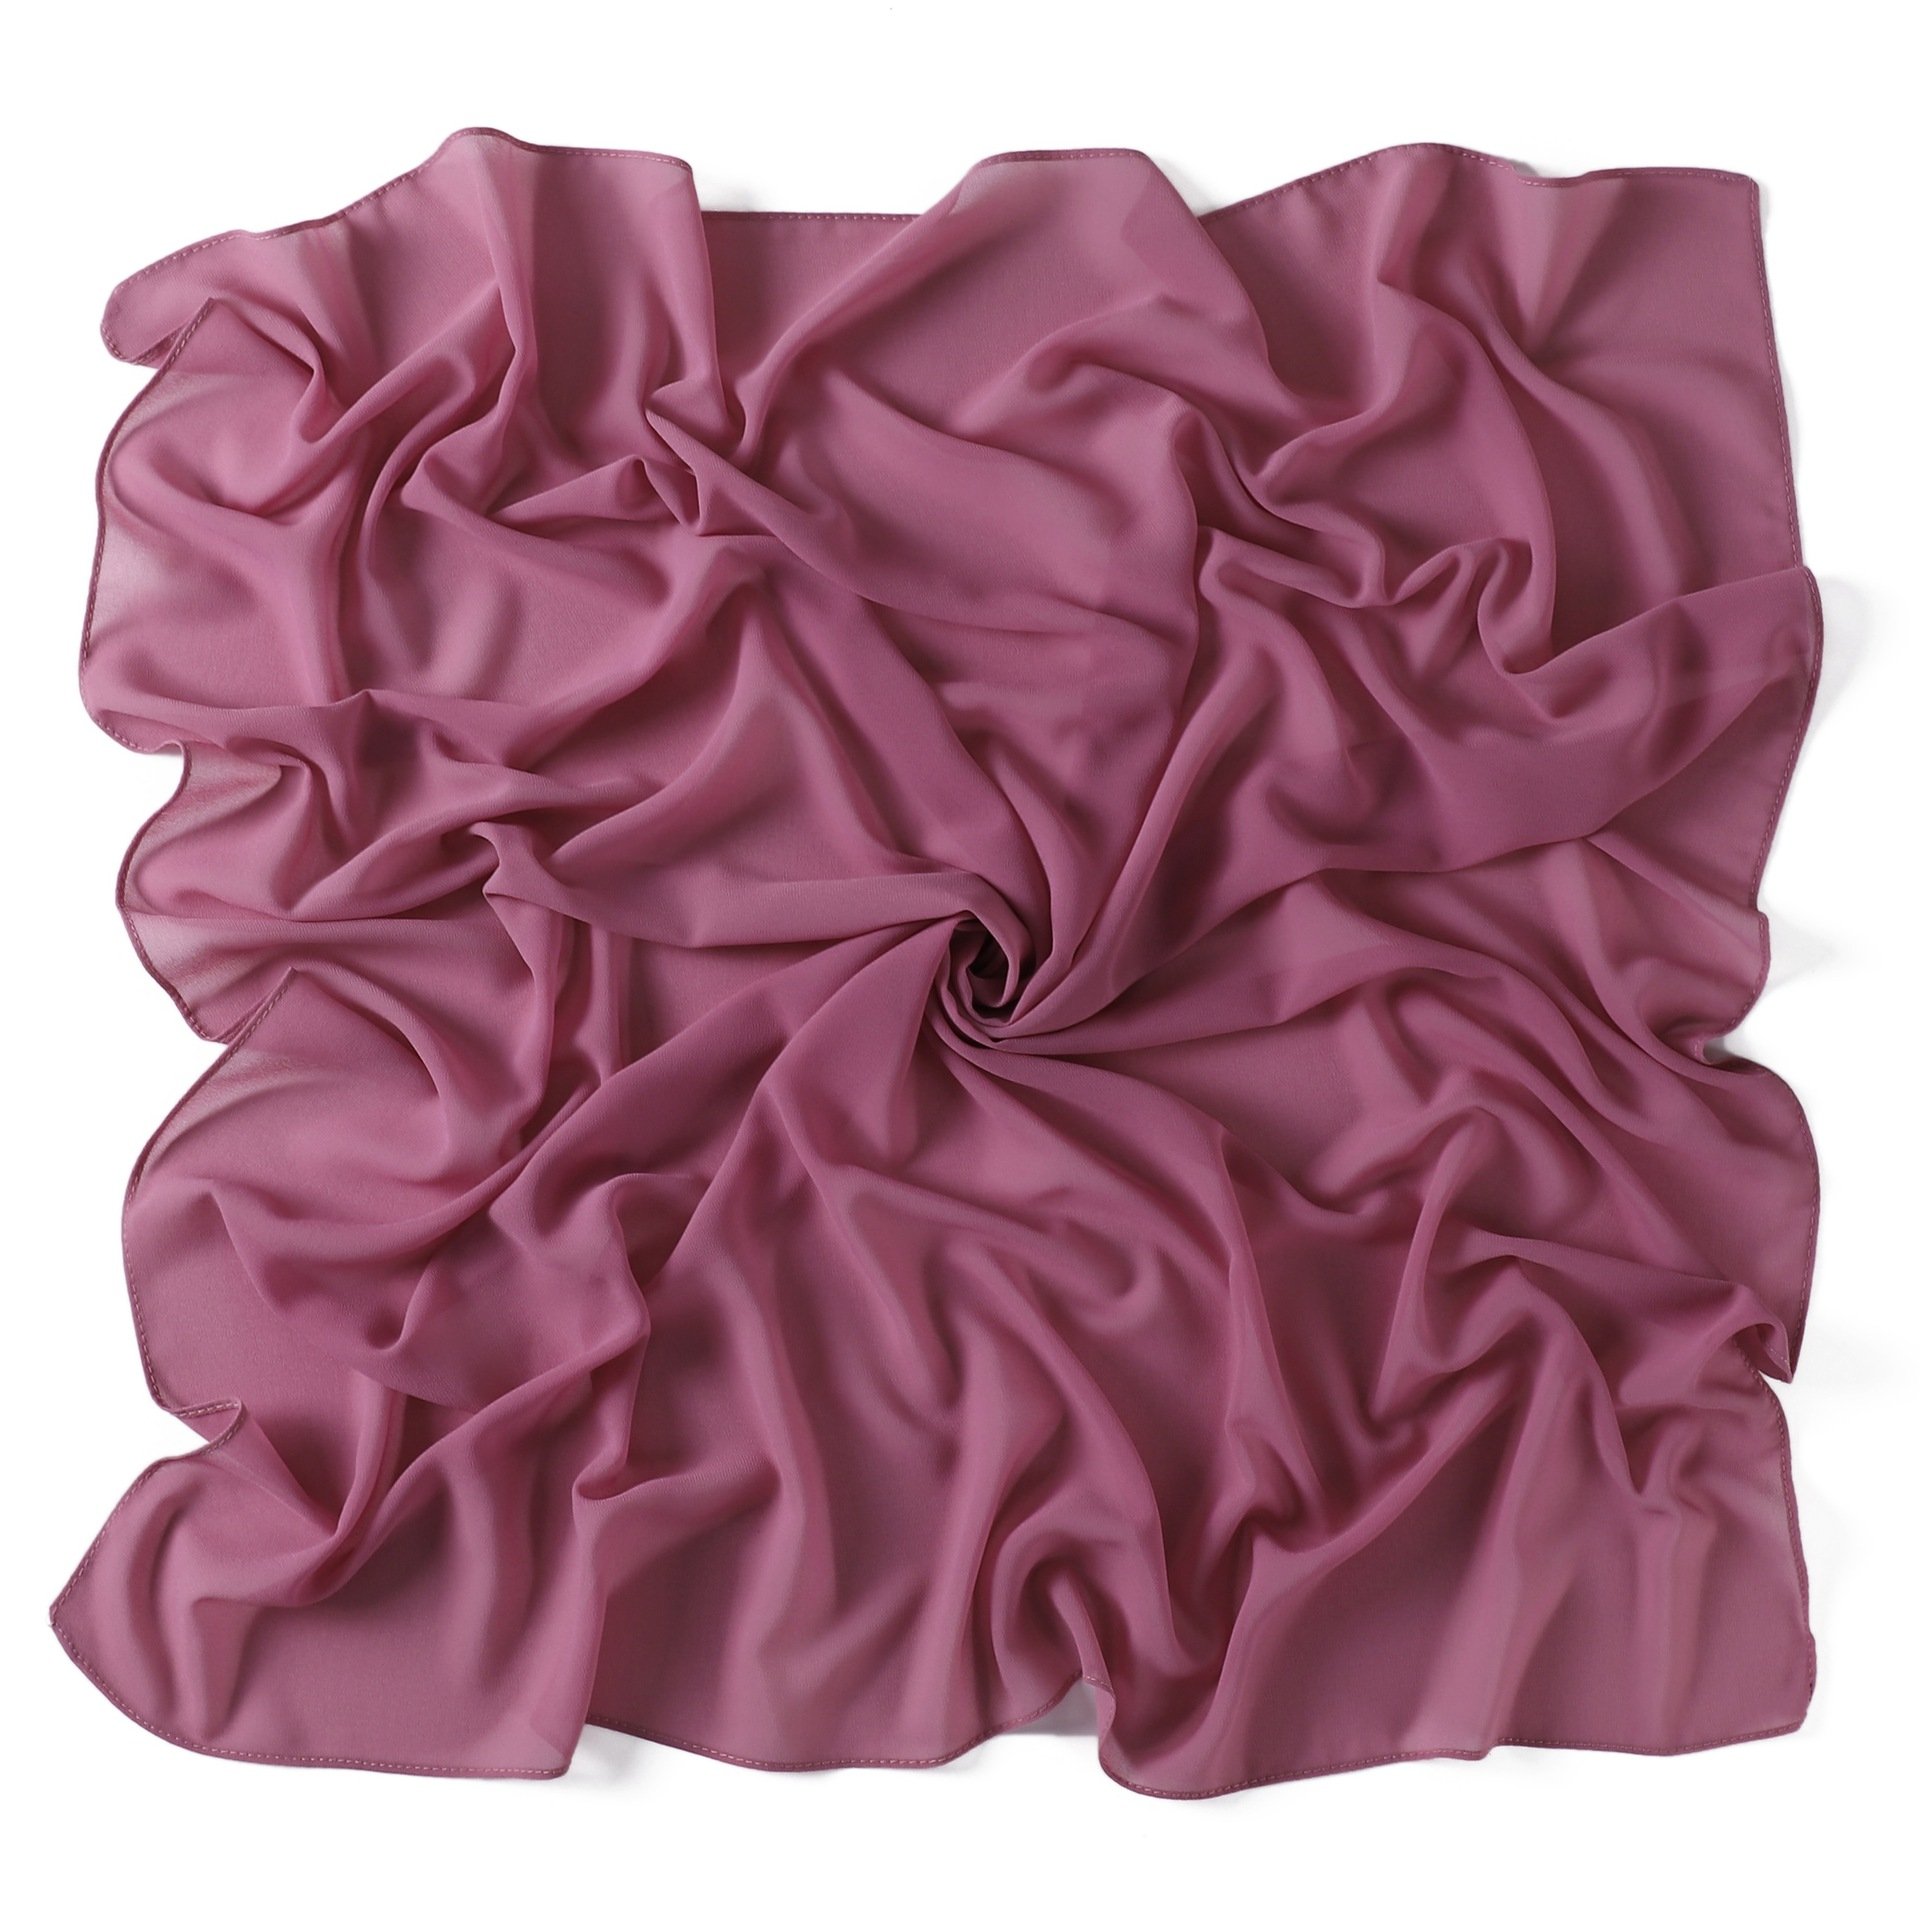 絲巾新款純色珍珠雪紡90cm大方巾 馬來印尼熱銷女士包頭巾 FJ238B